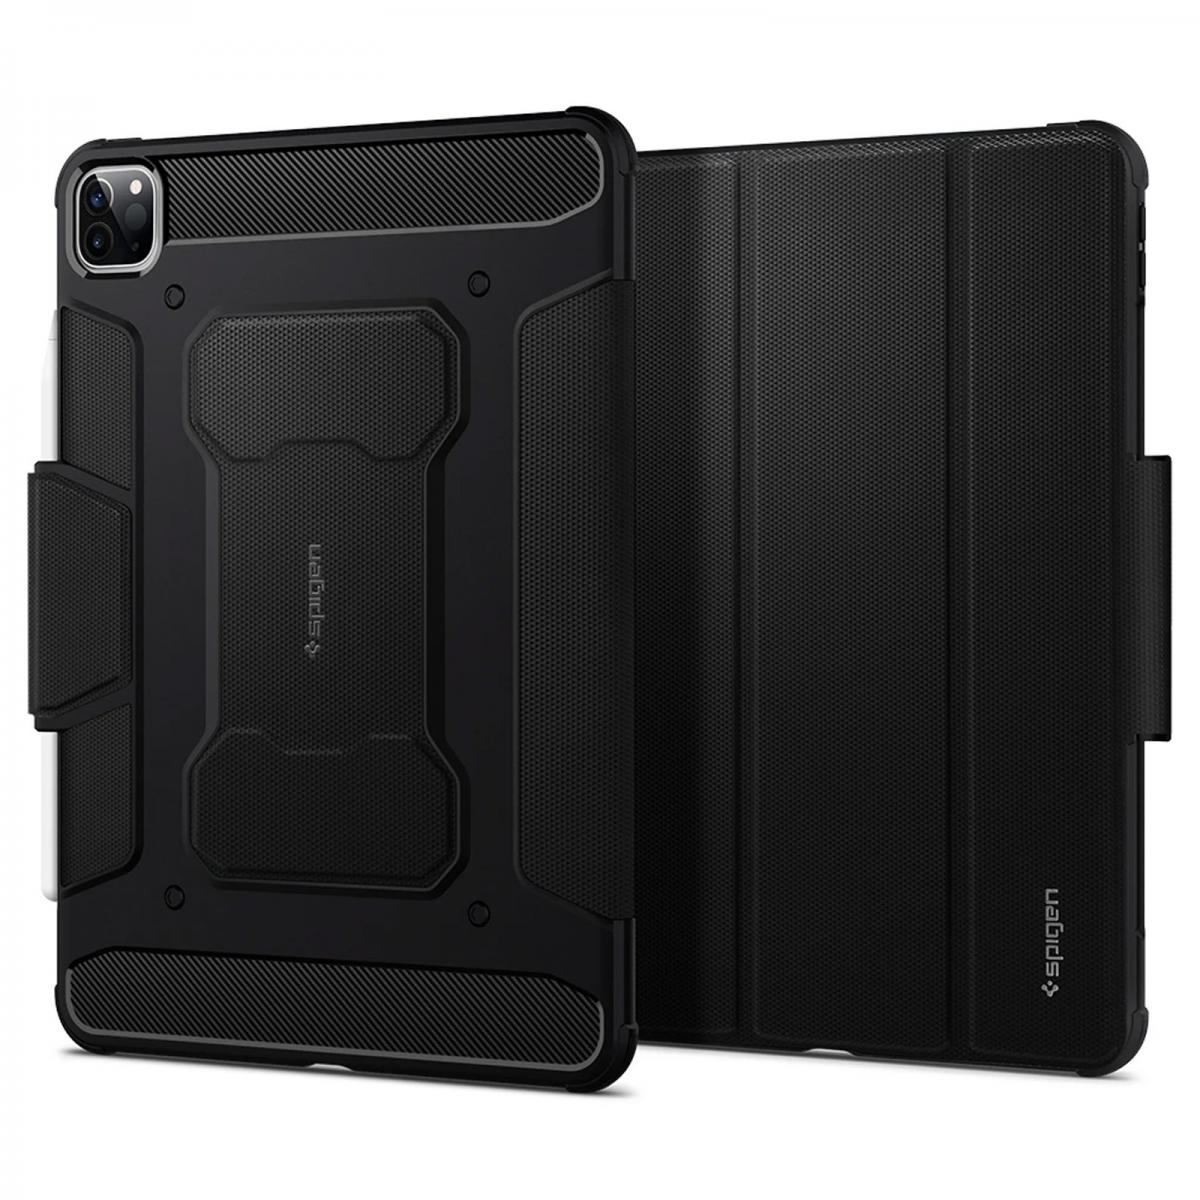 Spigen - Étui iPad Pro 12.9 2020 Antichoc Fonction Stand Rugged Armor Pro Spigen Noir - Coque, étui smartphone